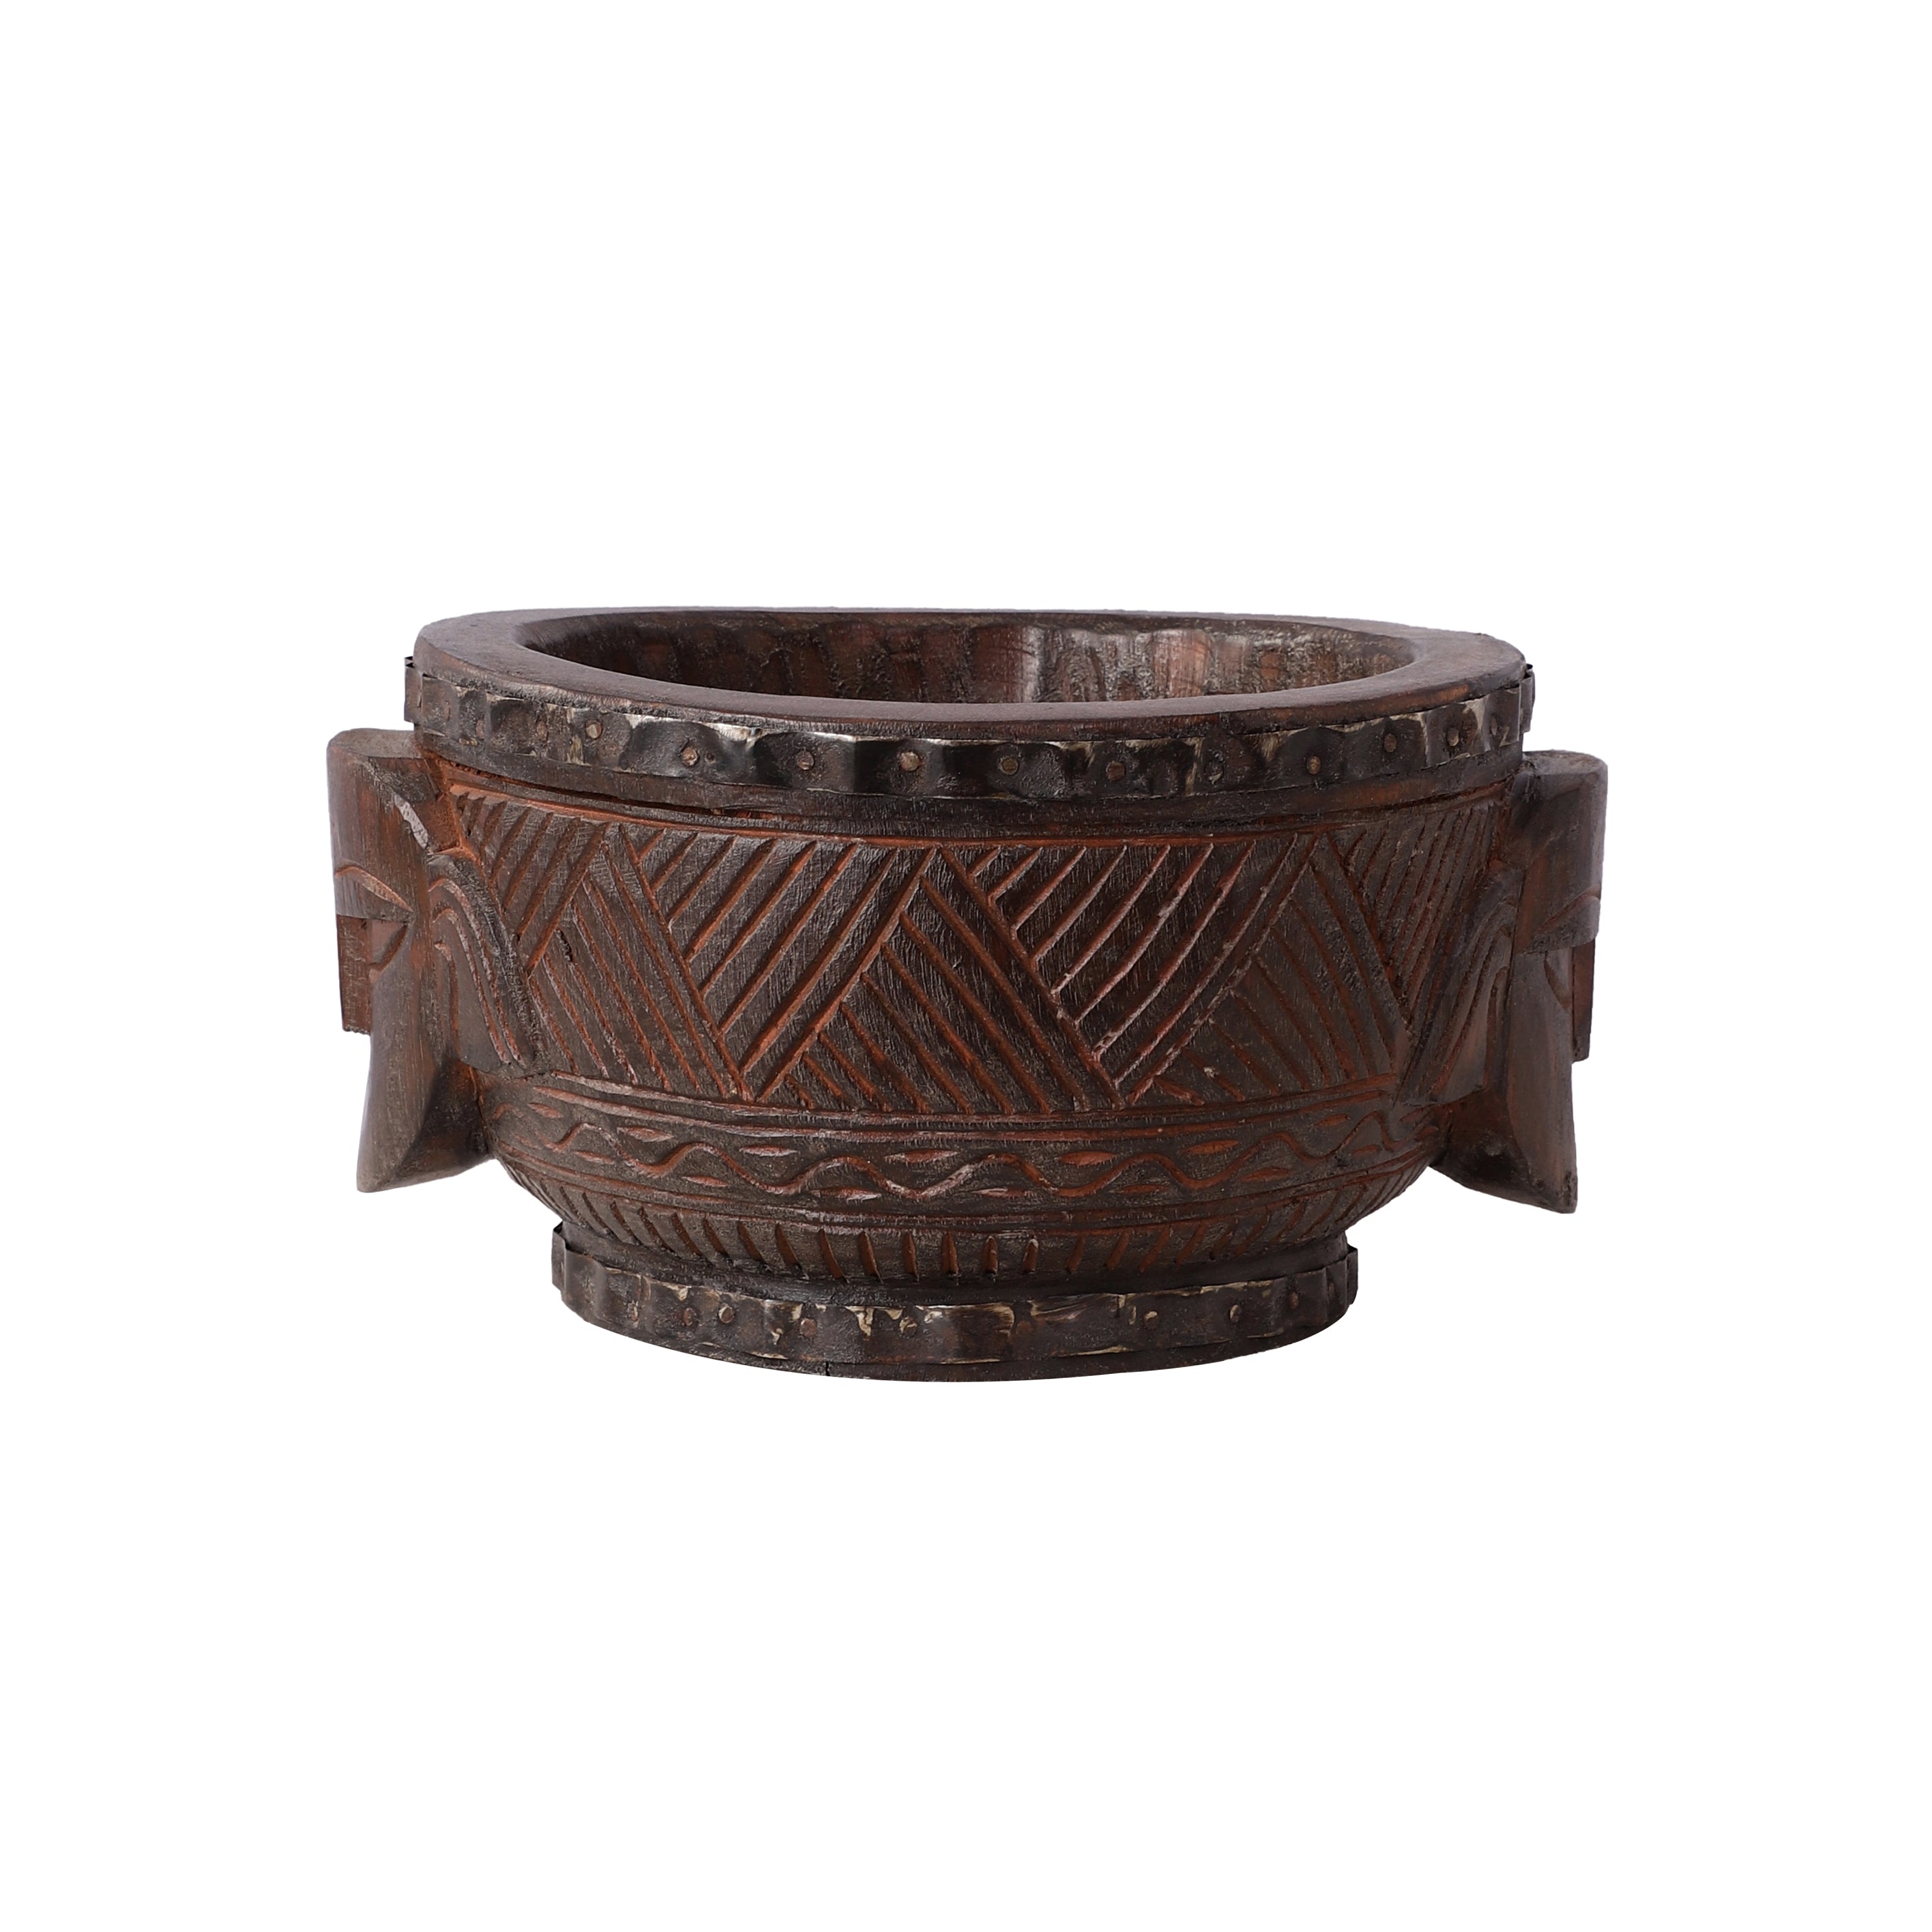 Antique Carved Bowl